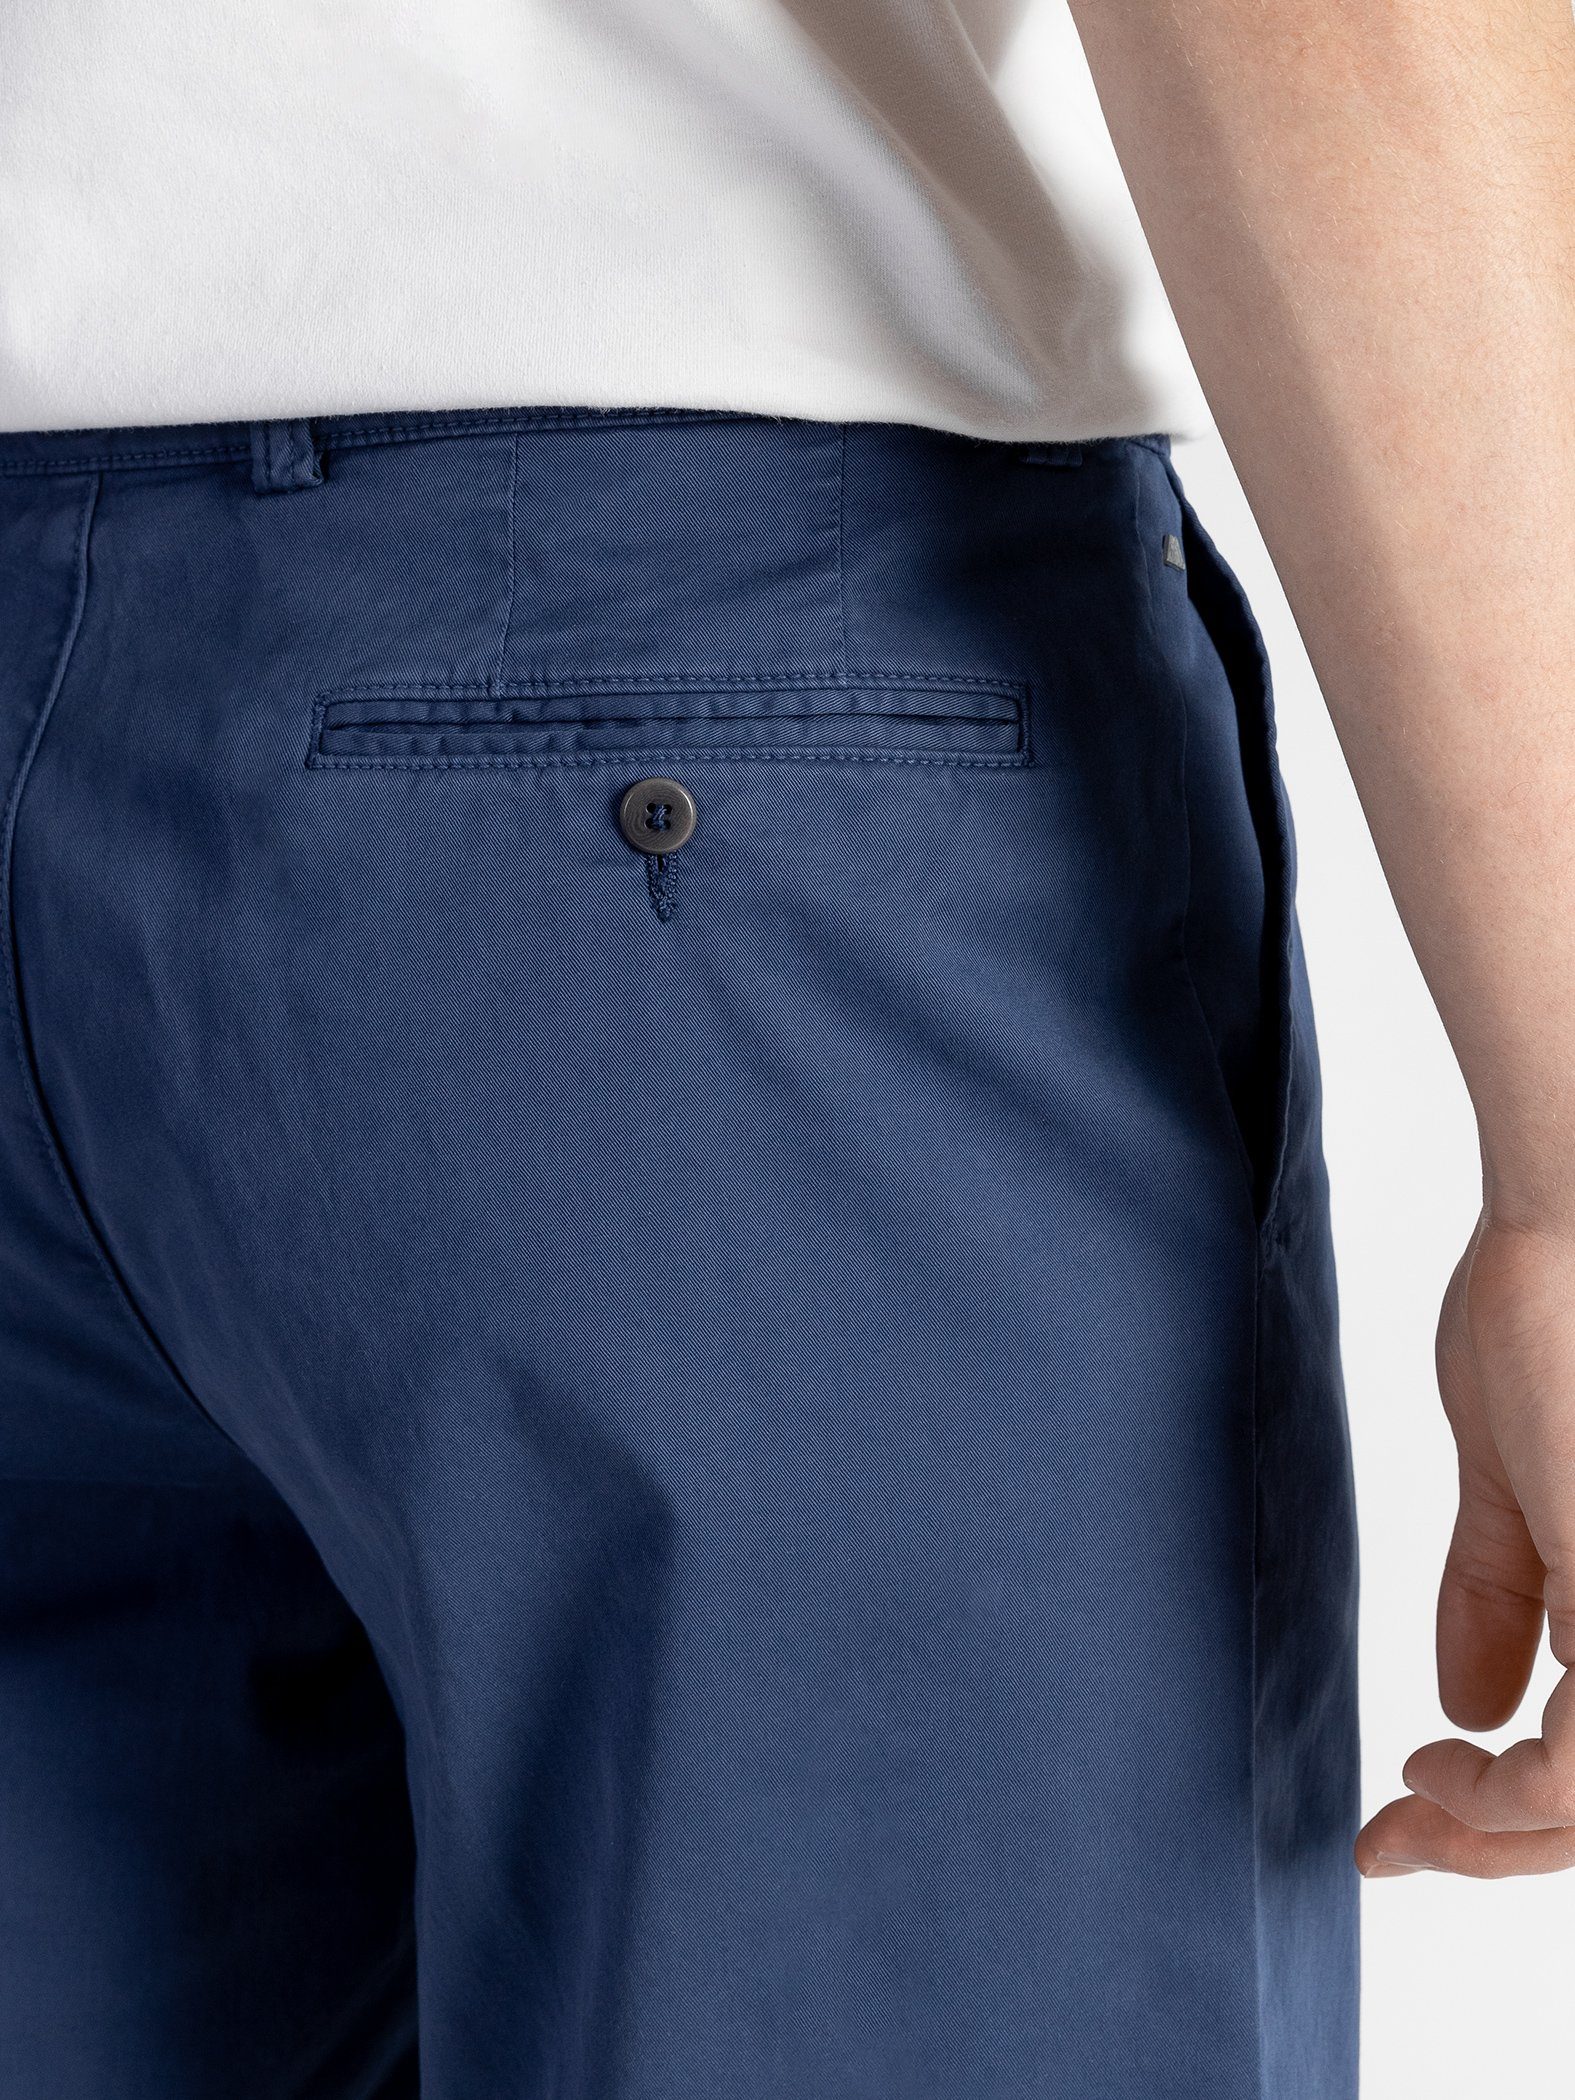 TwoMates Shorts Shorts mit elastischem Blau Farbauswahl, Bund, GOTS-zertifiziert